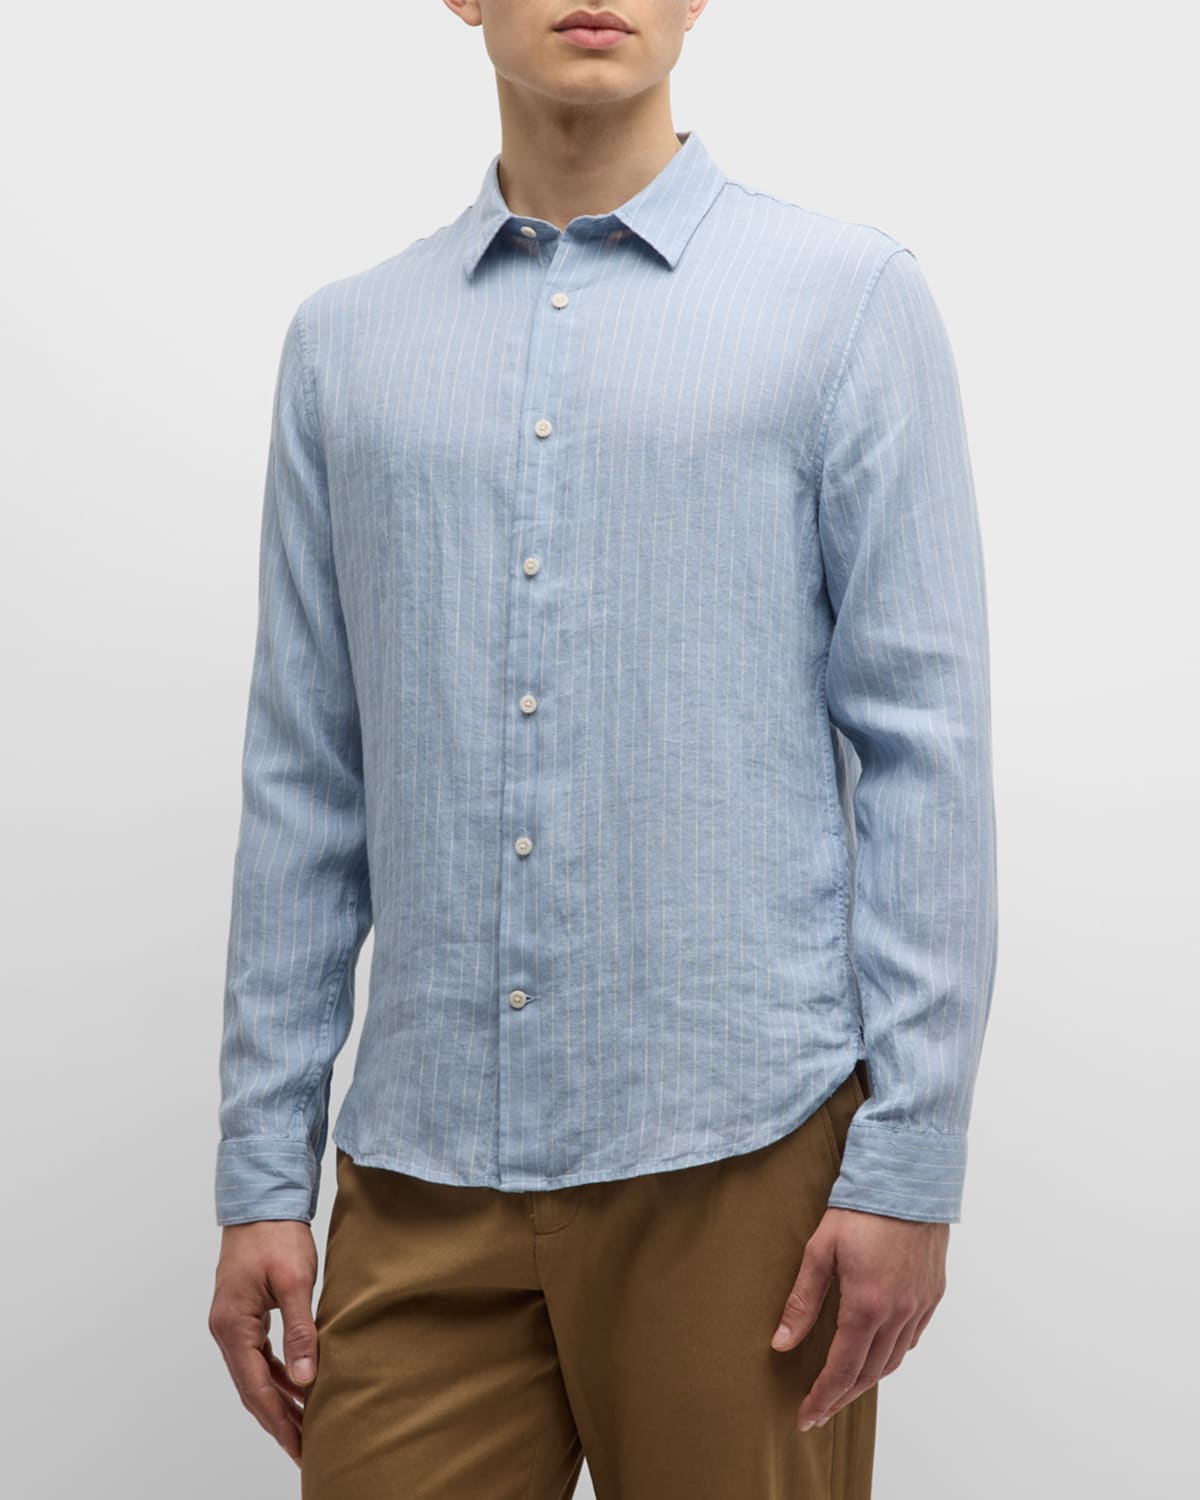 Men's Bayside Striped Linen Sport Shirt